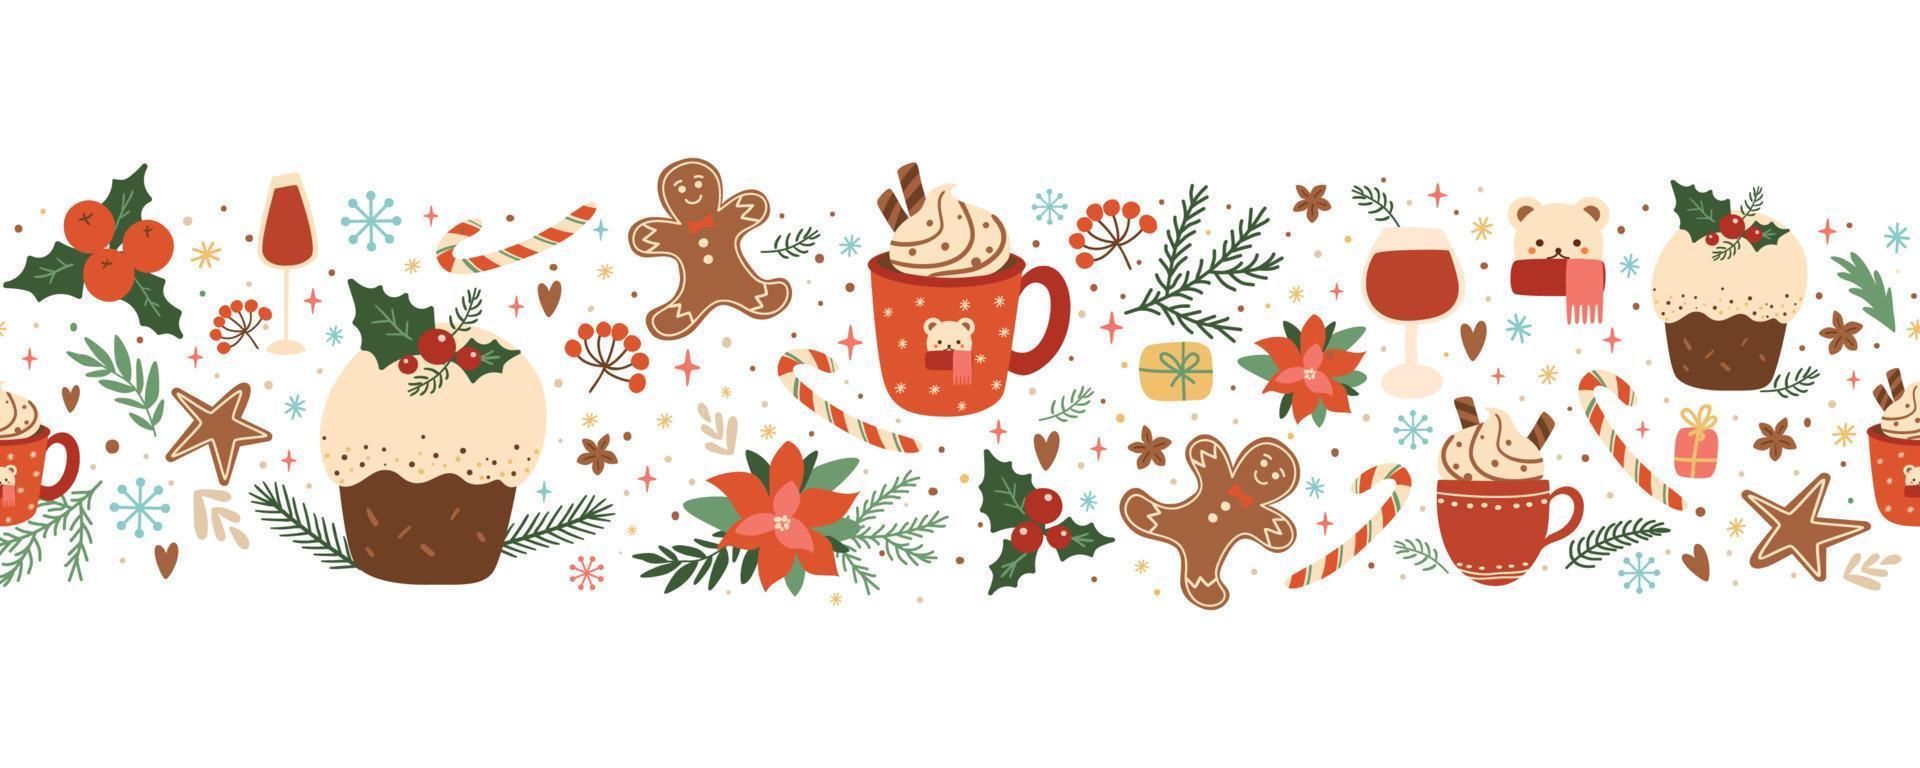 Kerstmis taart, pudding, voedsel, koffie, peperkoek naadloos grens met winter vakantie bloemen decoratief elementen. gebakken Kerstmis nagerecht, heet winter drankje. horizontaal herhaling vector illustratie